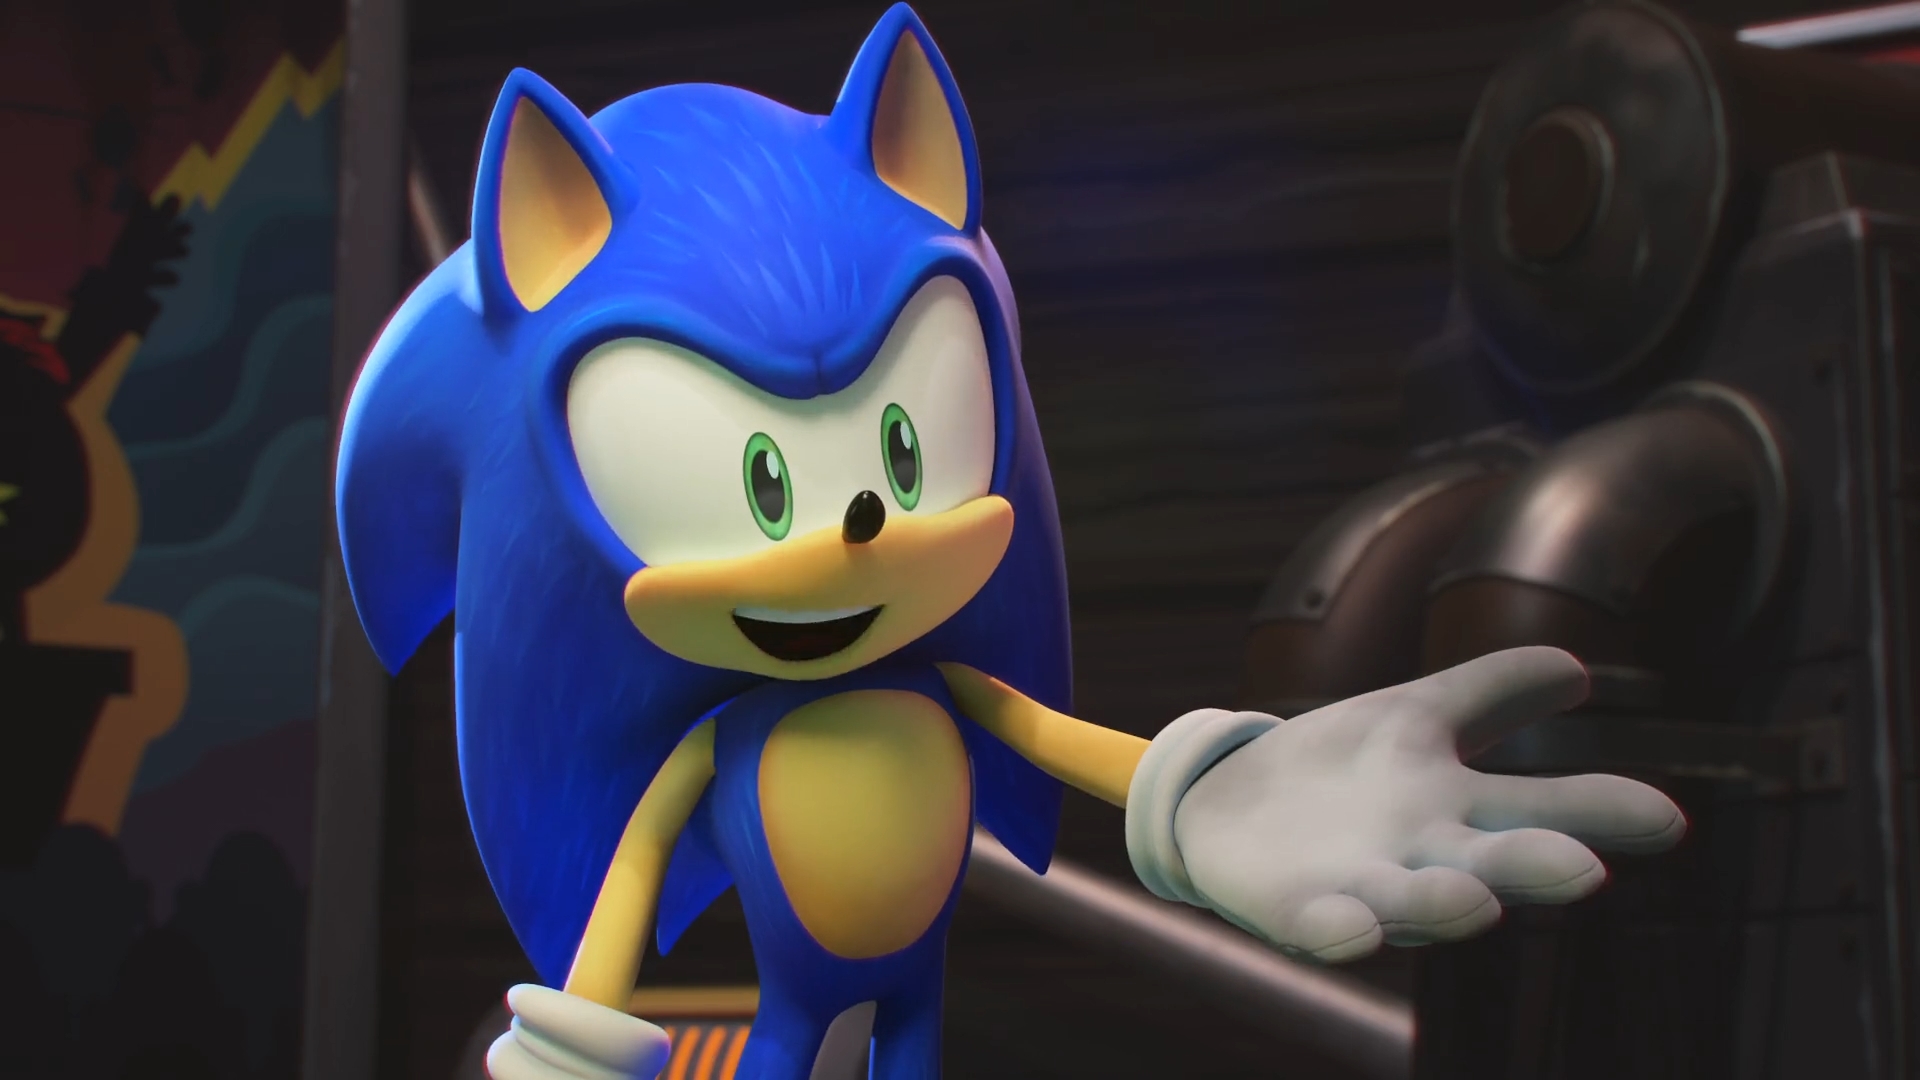 Sonic the Hedgehog 2020-Sonic 6 by GiuseppeDiRosso on DeviantArt